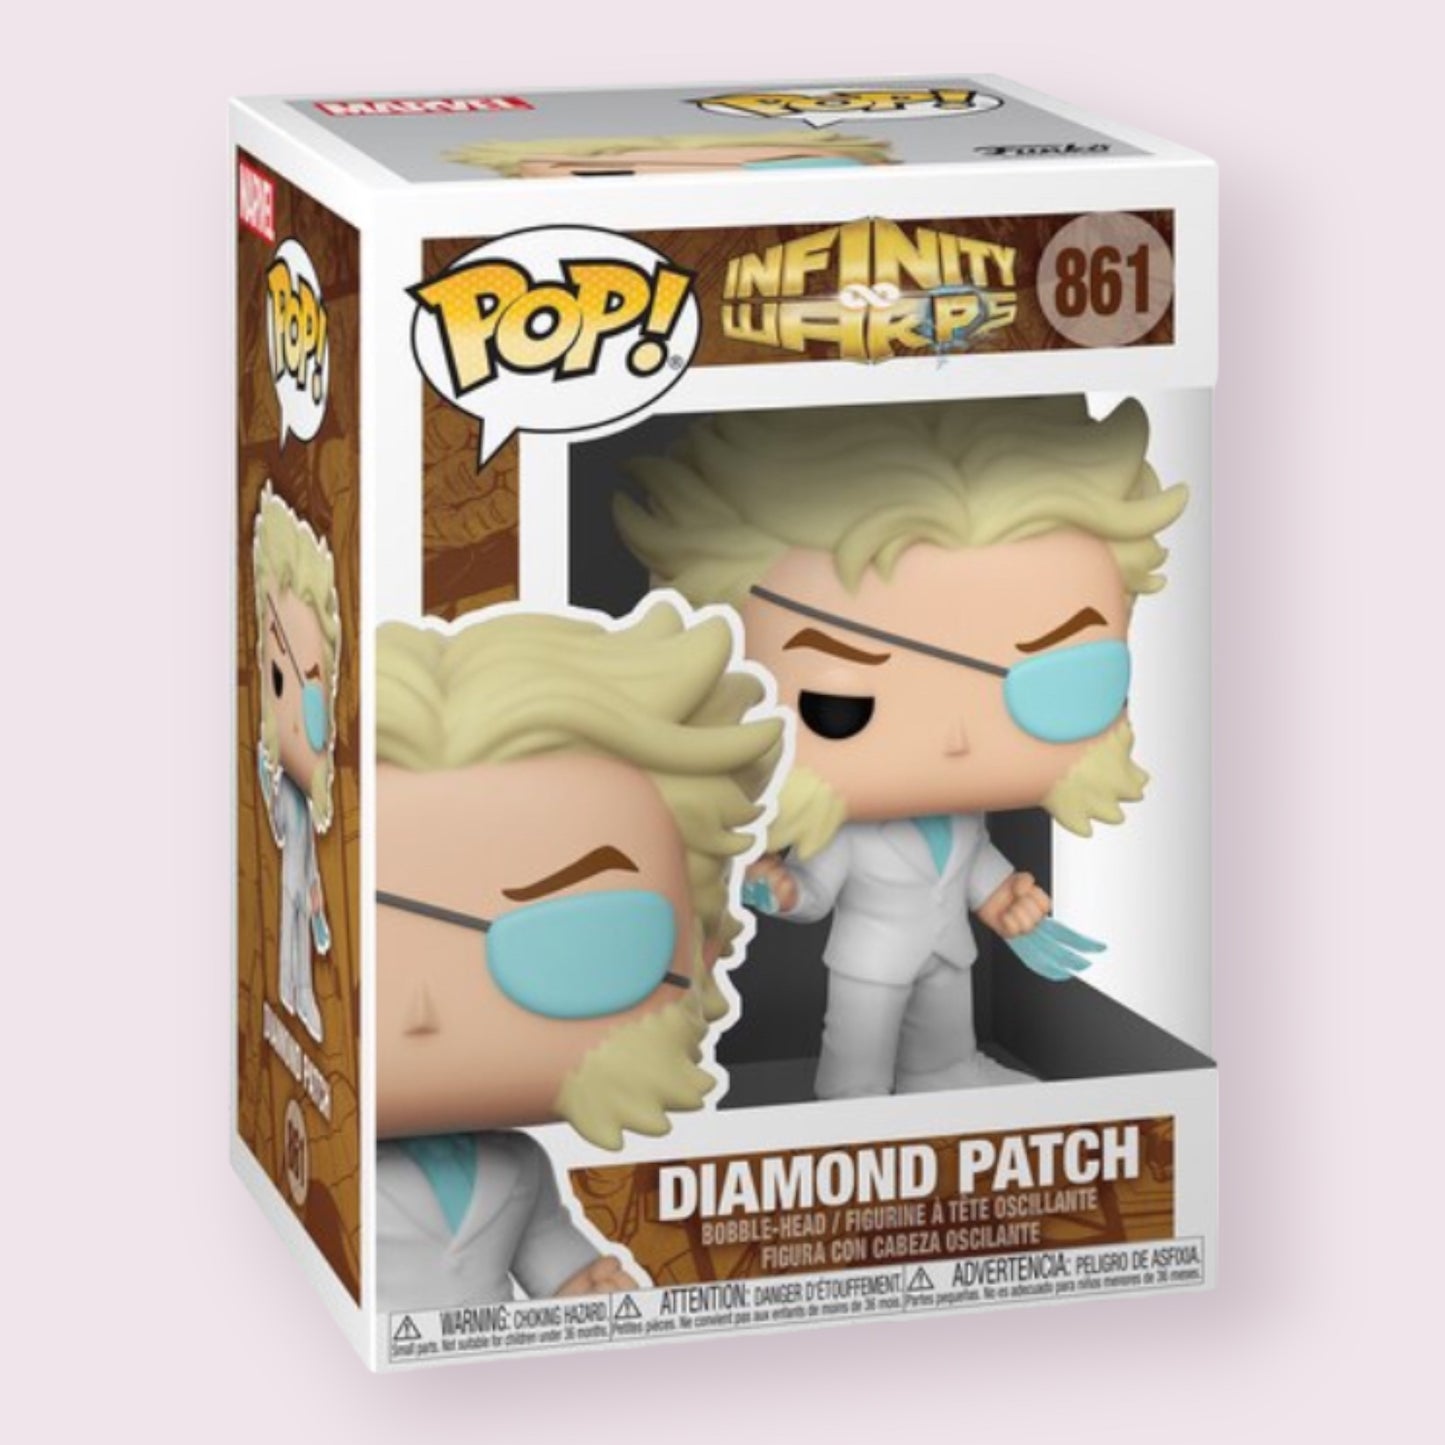 POP! Infinity Wars Diamond Patch  Pixie Candy Shoppe   